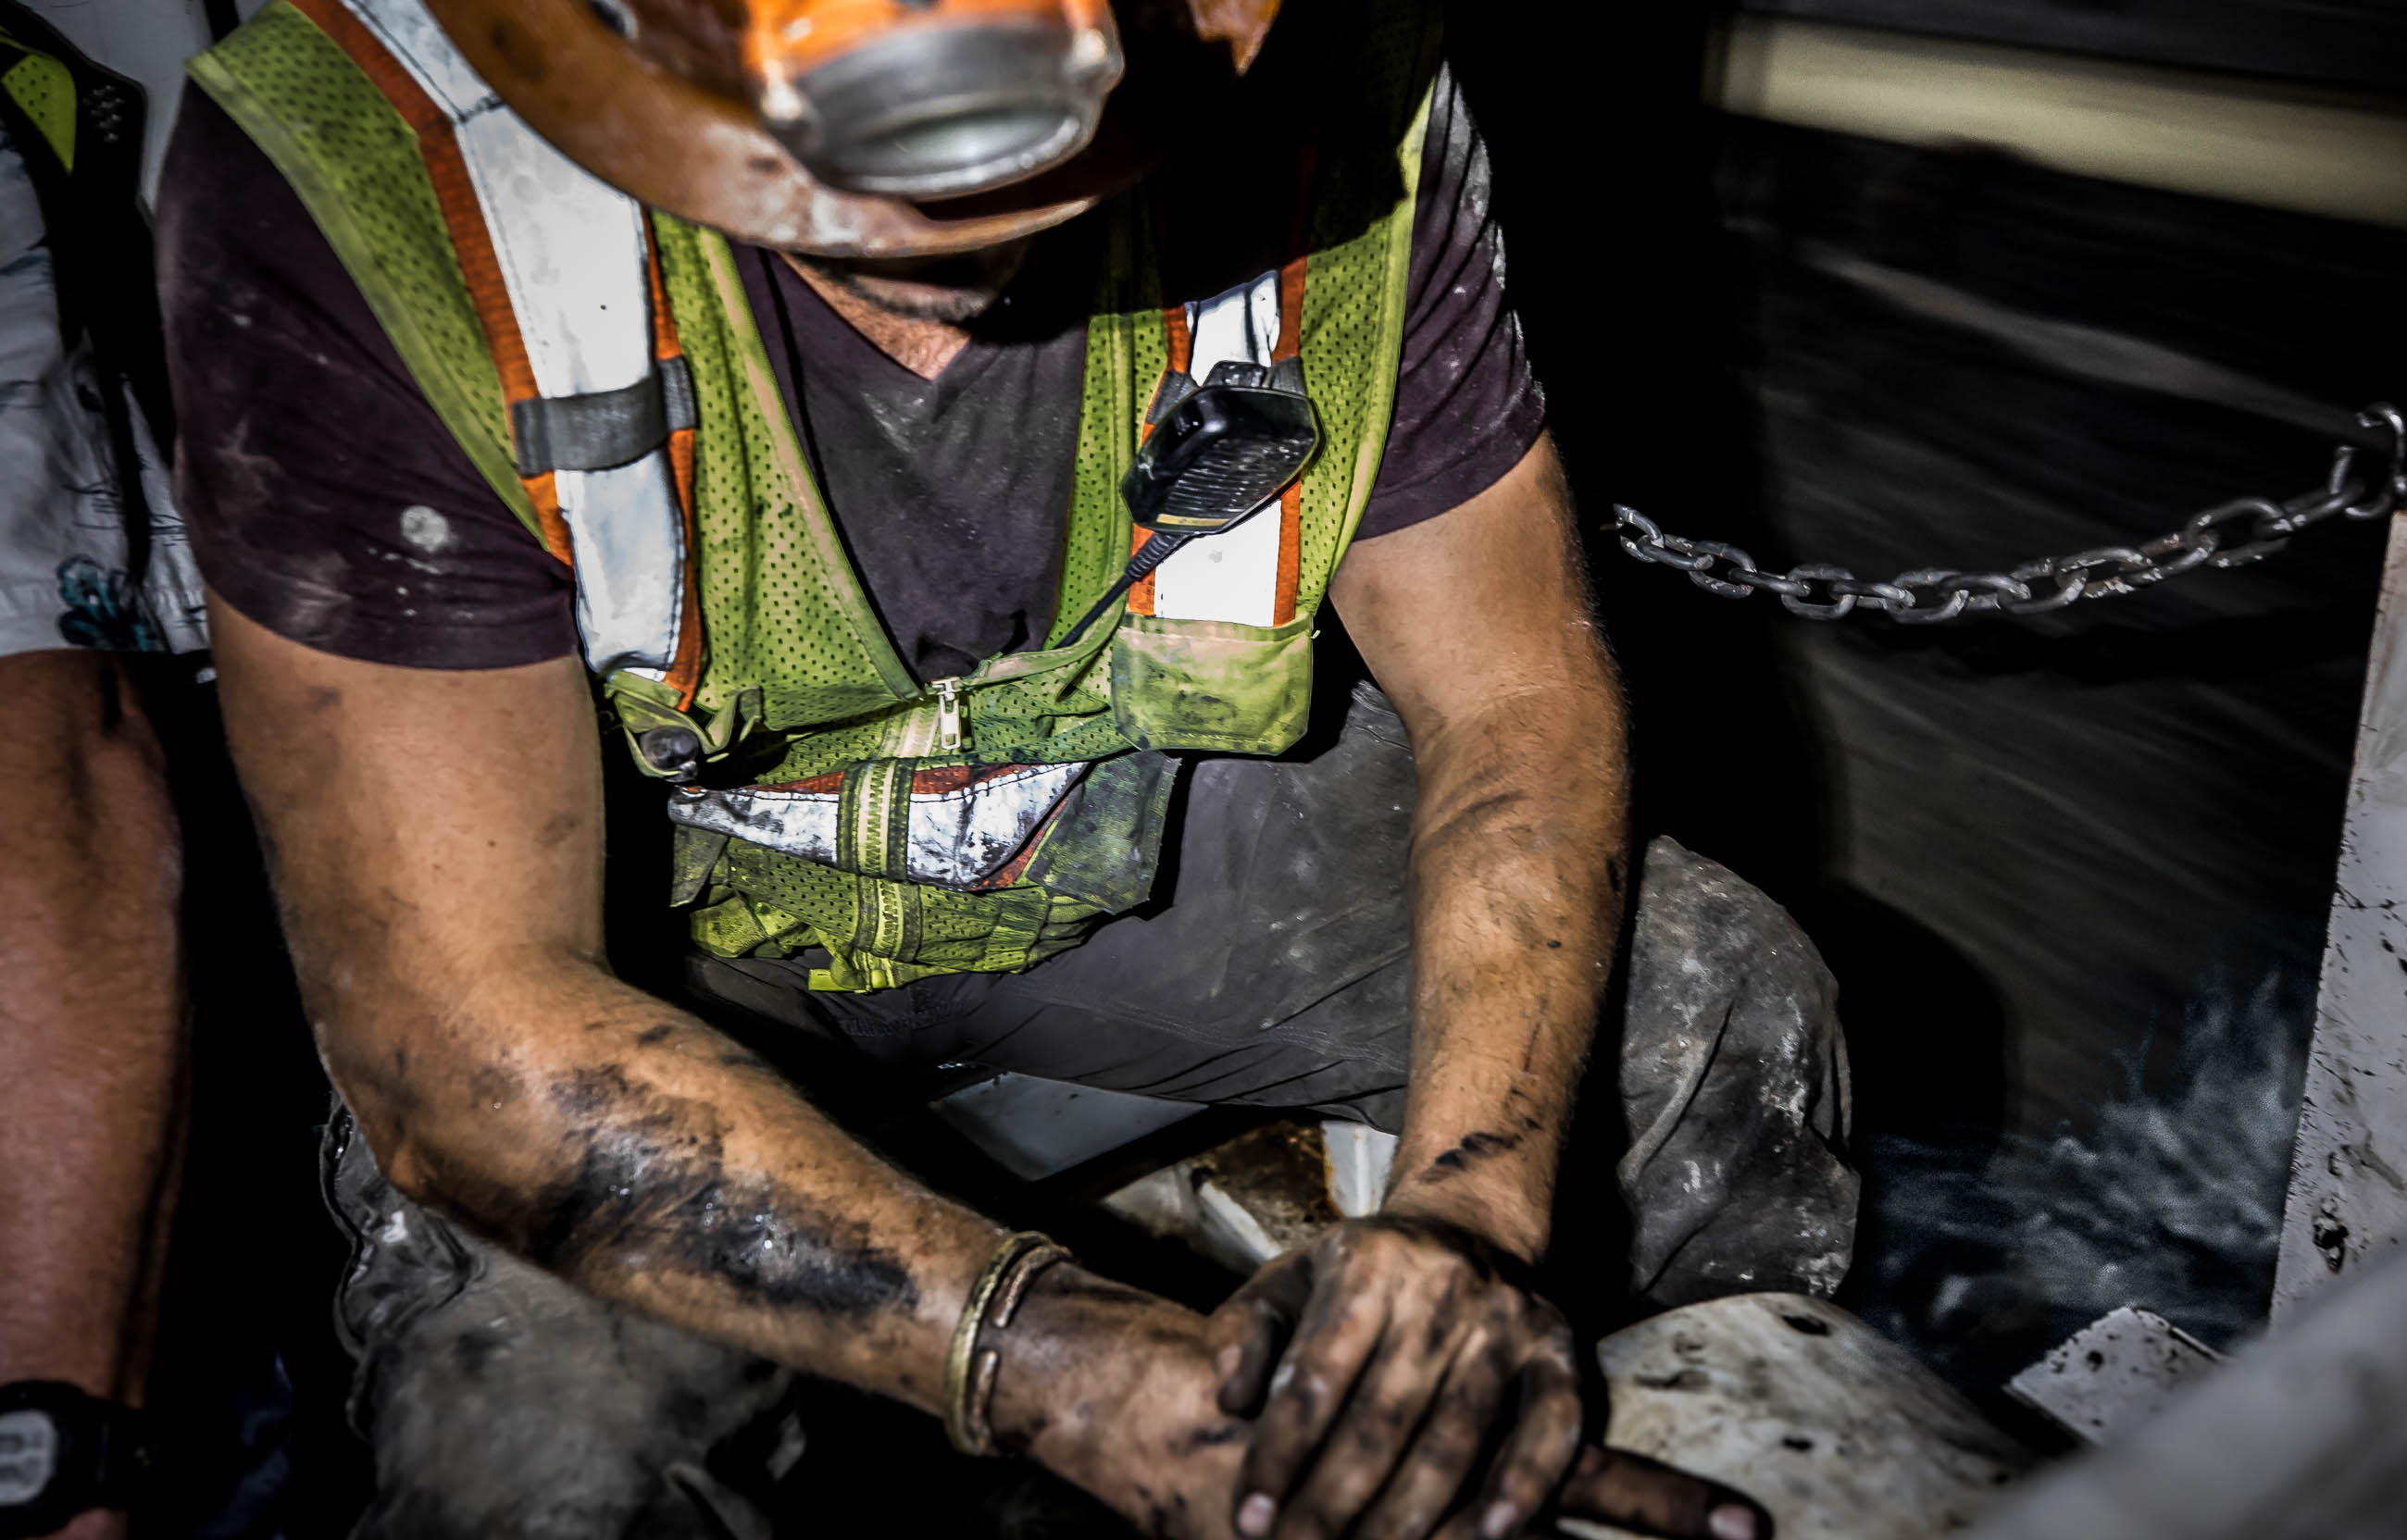 Industrial Mining in Atlanta - Worker on train